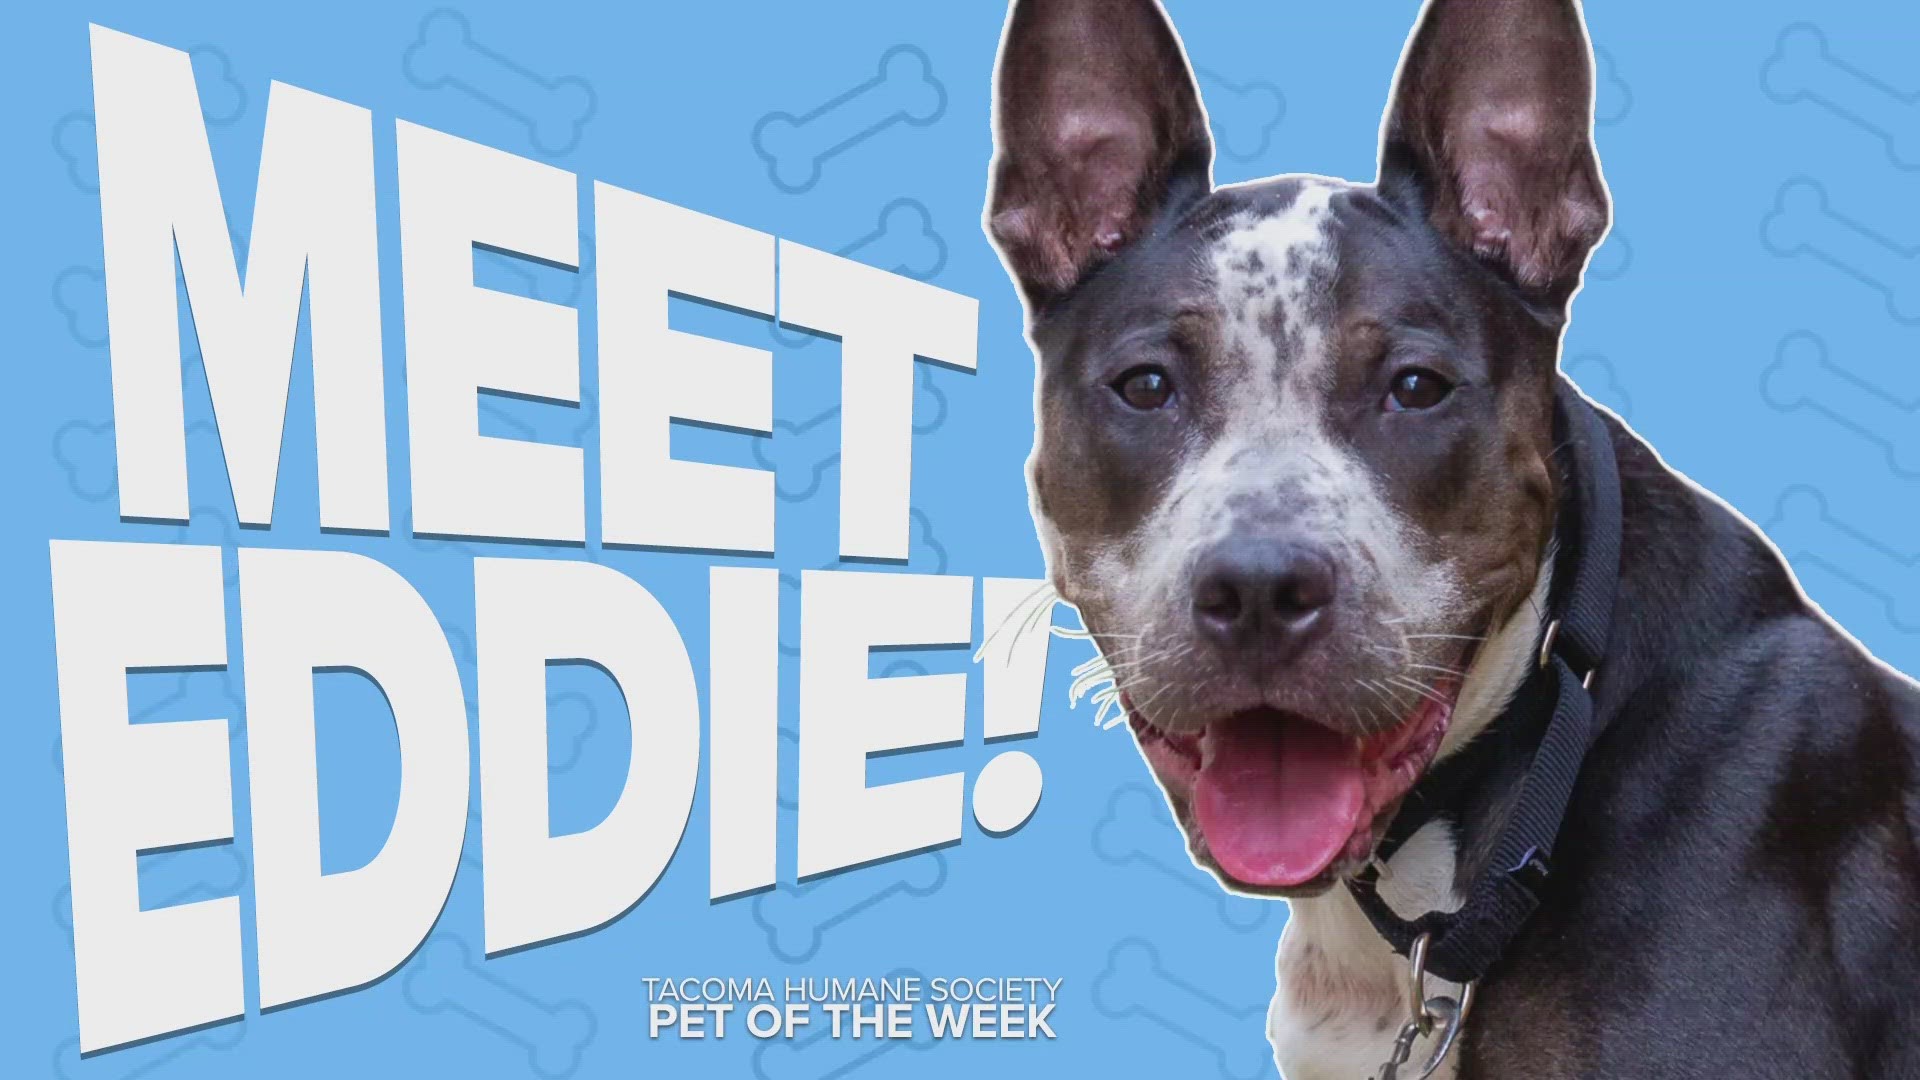 This week's adoptable pet of the week is Eddie!